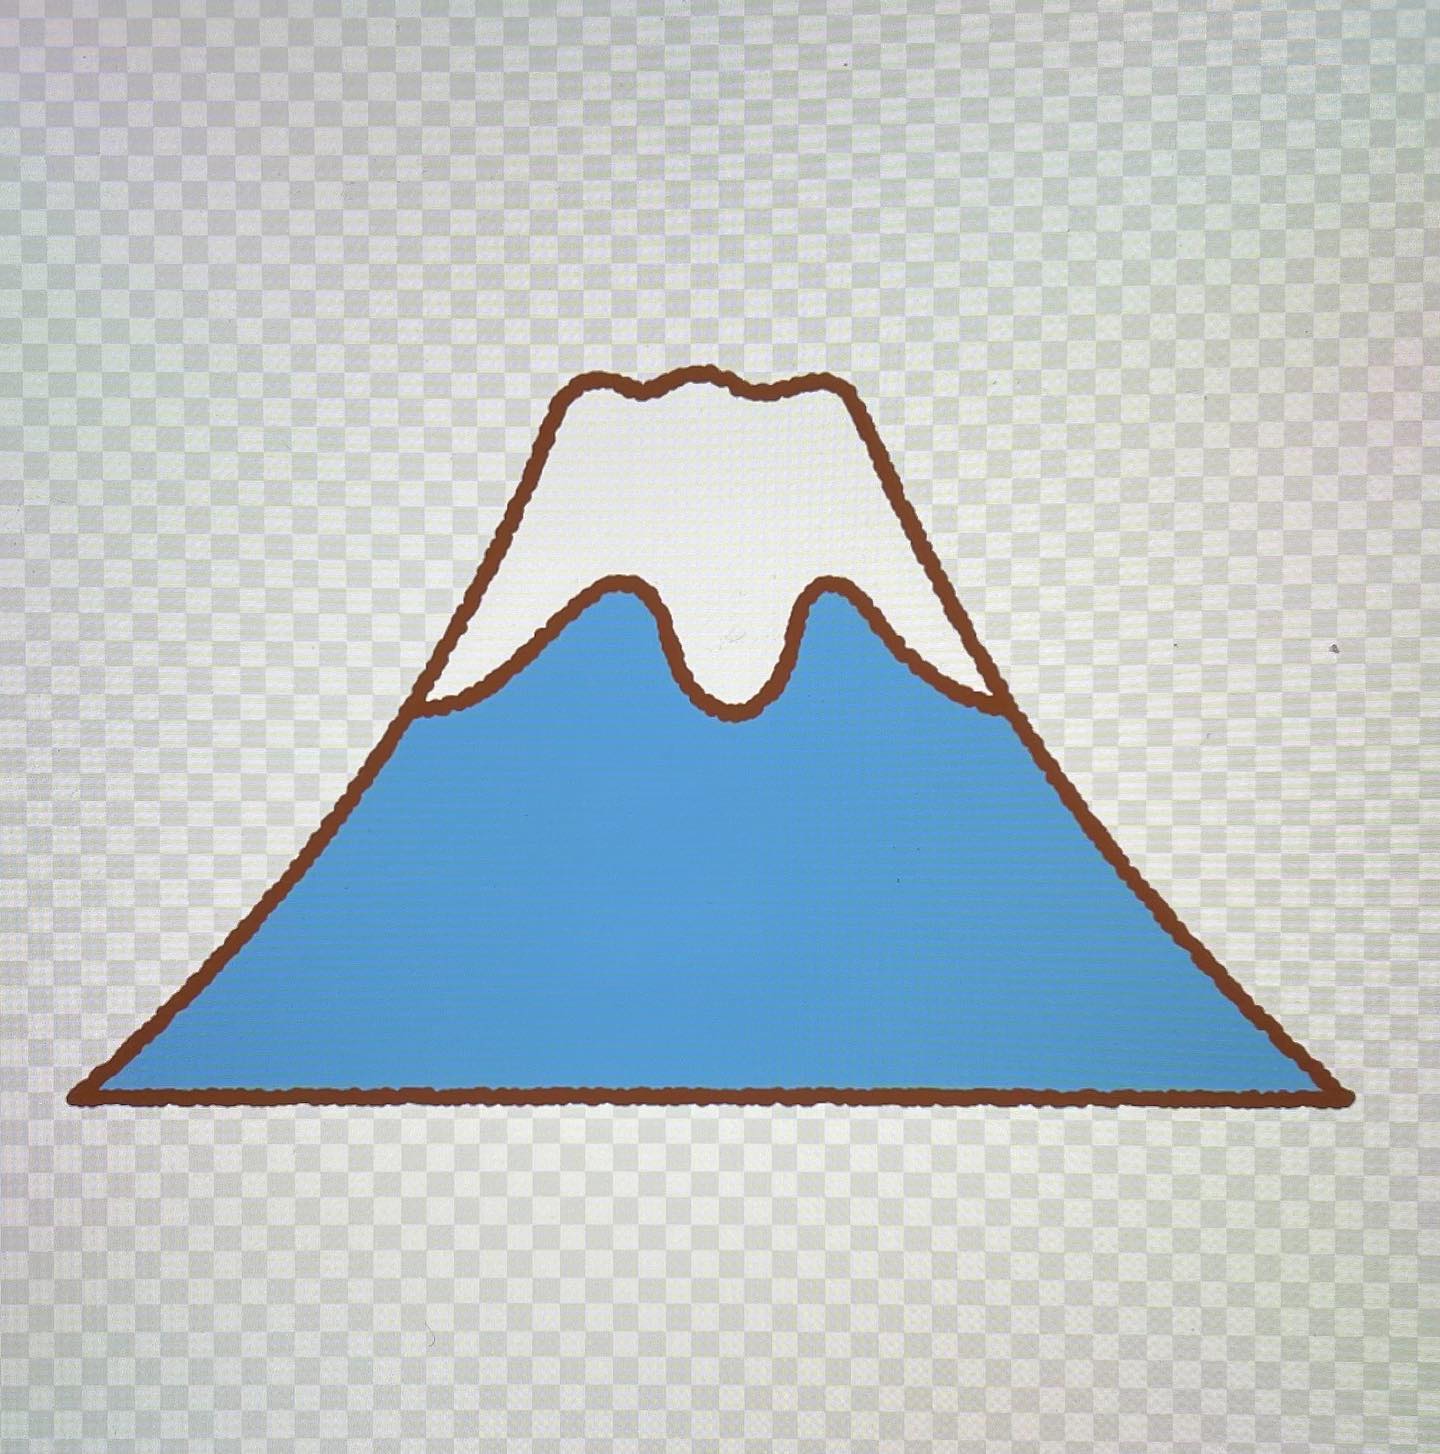 #富士山はピラミッド？日本のピラミッドは、自然の山に巨石や土砂を配置して三角形に形成しています。その最たるものが富士山。富士山は4層に積み重なって一番外側の新富士層のI部あるいは全部が人工的に作られたのではと言われています。